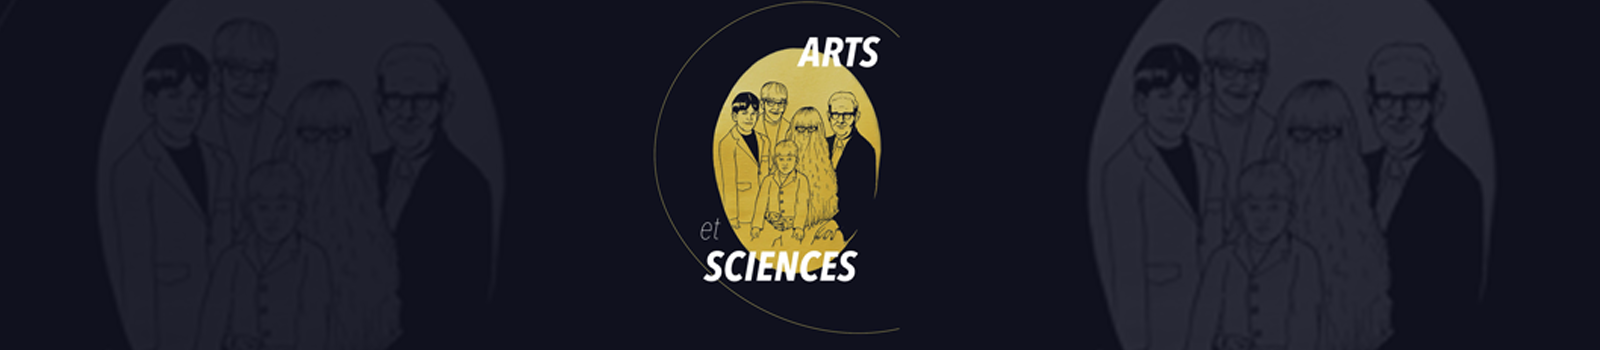 Arts et Sciences 2018